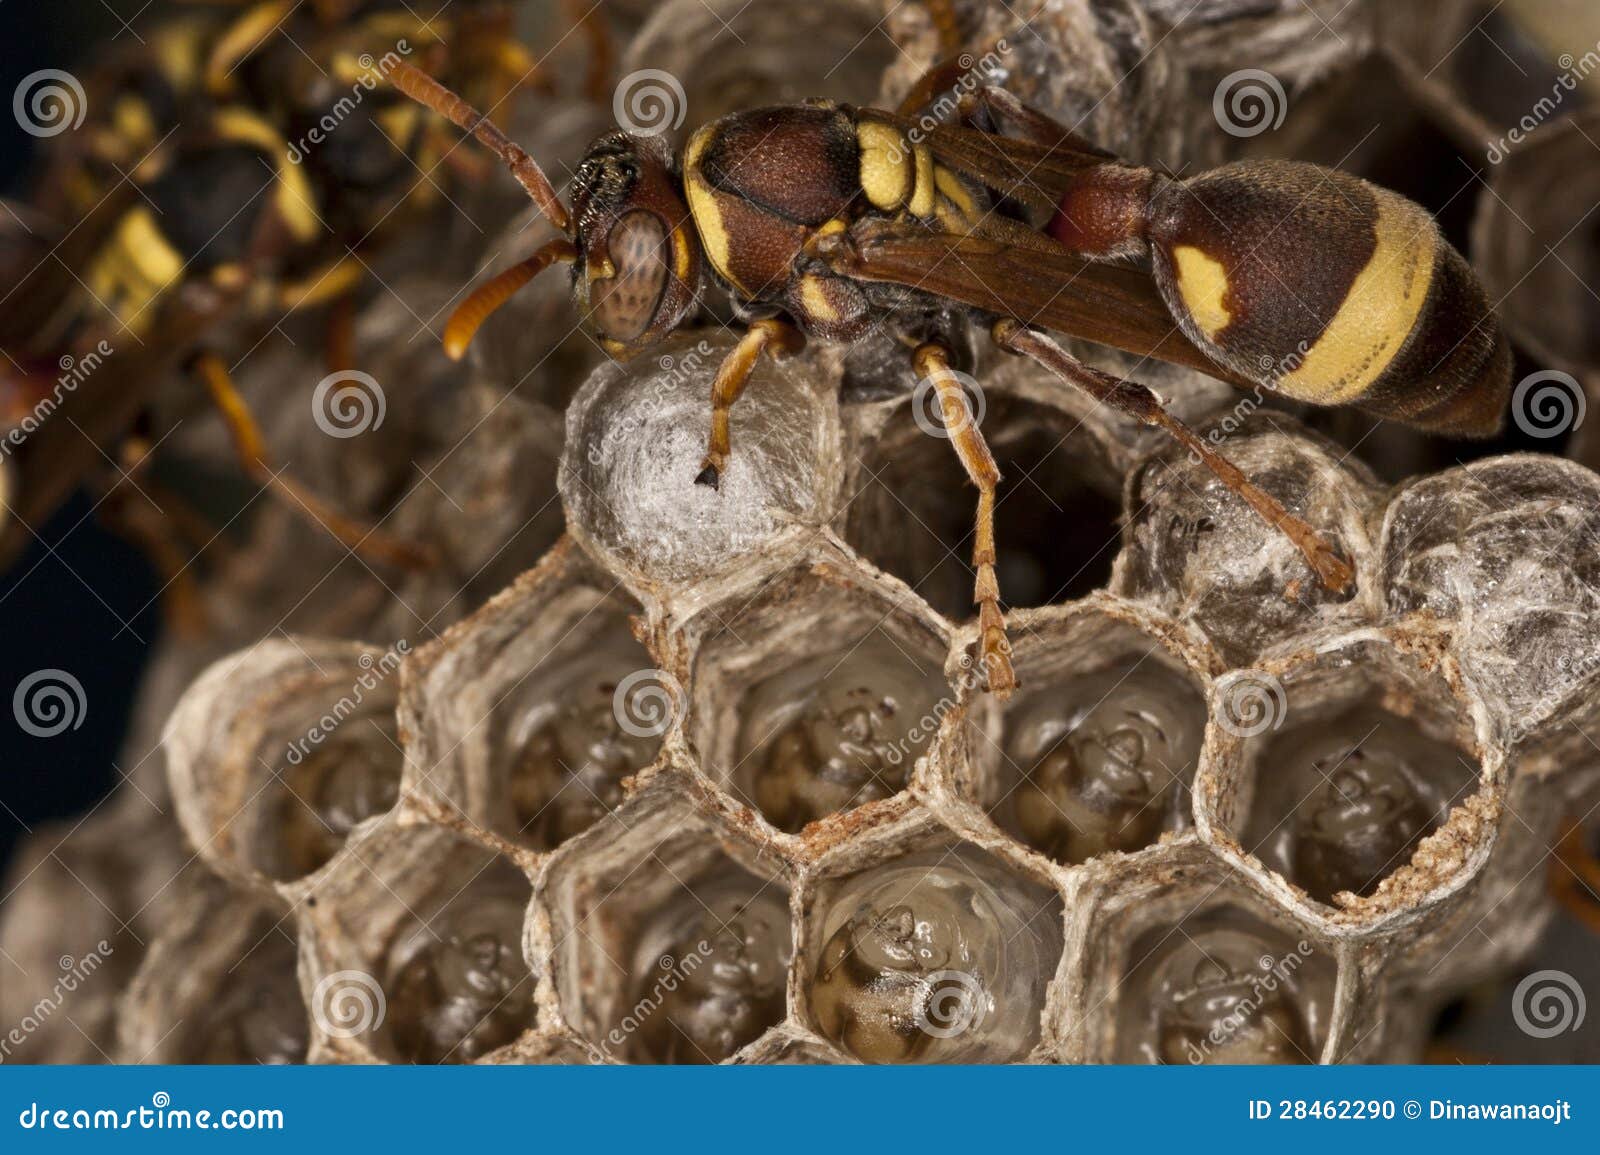 幼虫黄蜂 库存照片. 图片 包括有 宏指令, 棍子, 布罗德, 梳子, 对象, 害虫, 特写镜头, 木偶 - 25390542